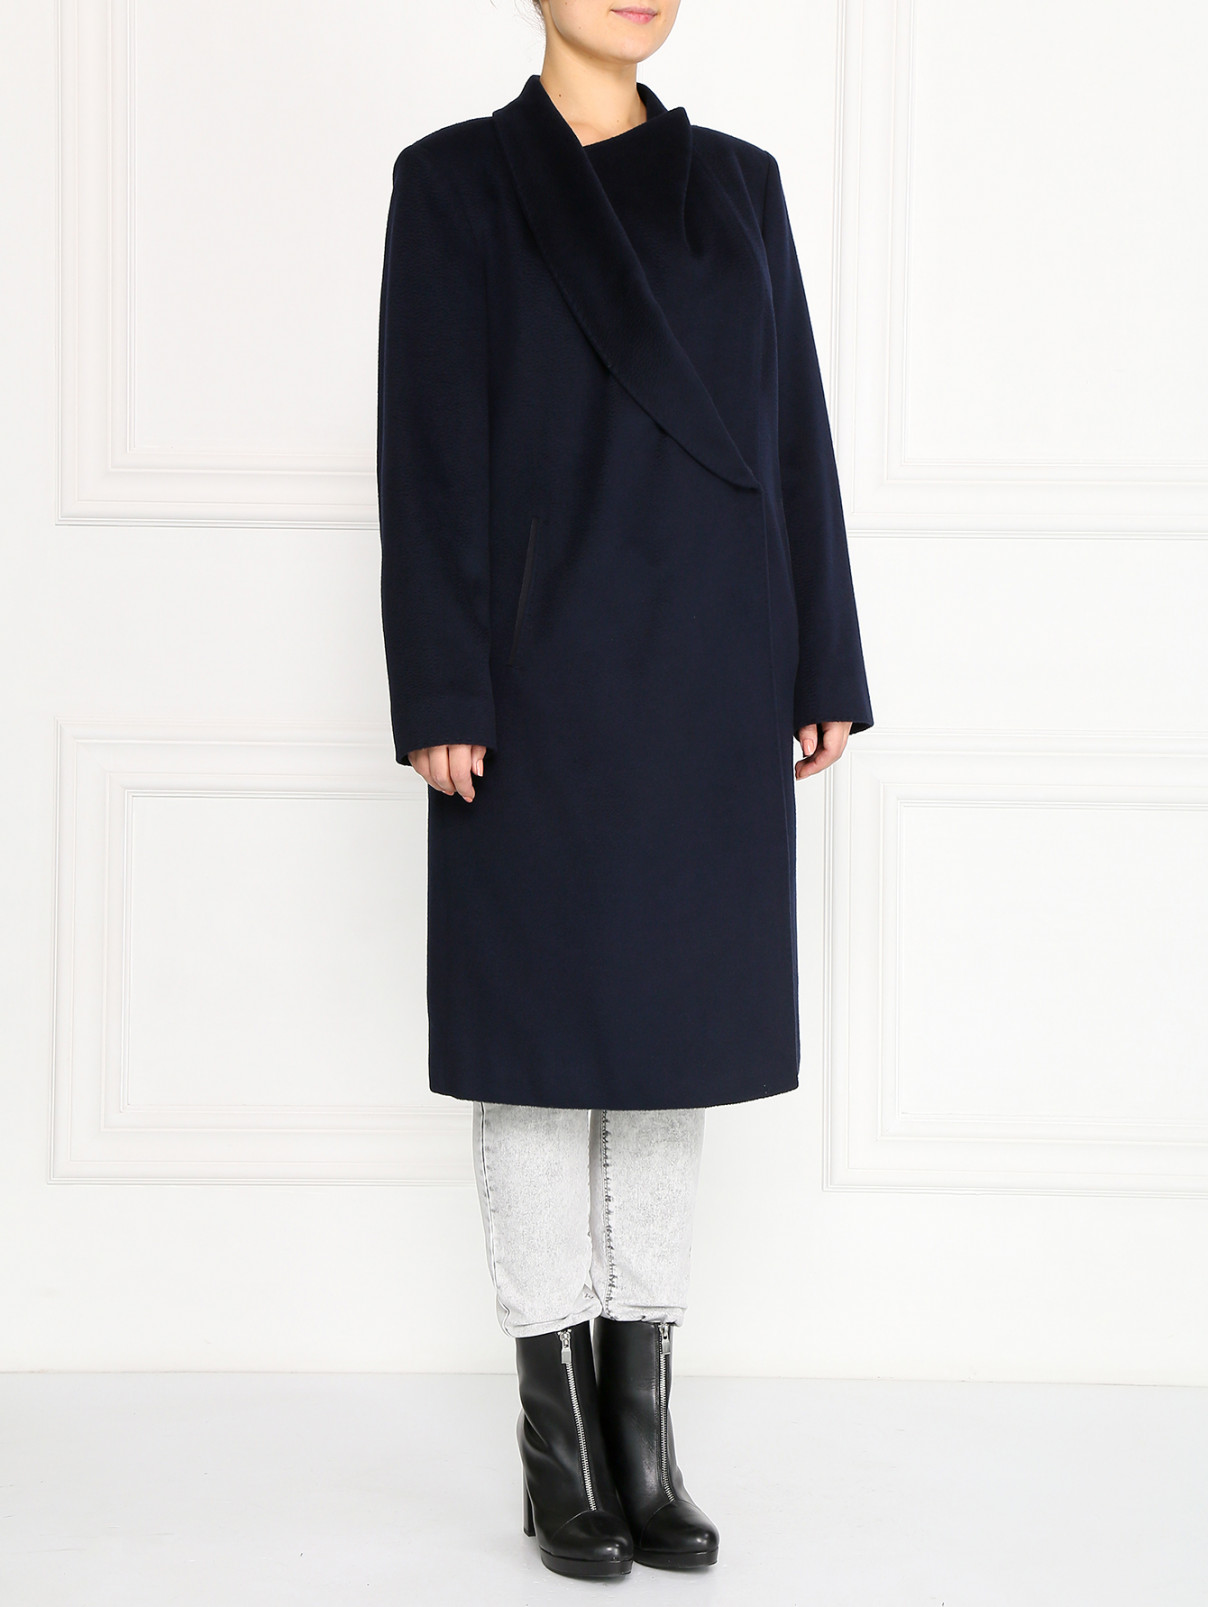 Пальто из кашемира с боковыми карманами Marina Rinaldi  –  Модель Общий вид  – Цвет:  Синий